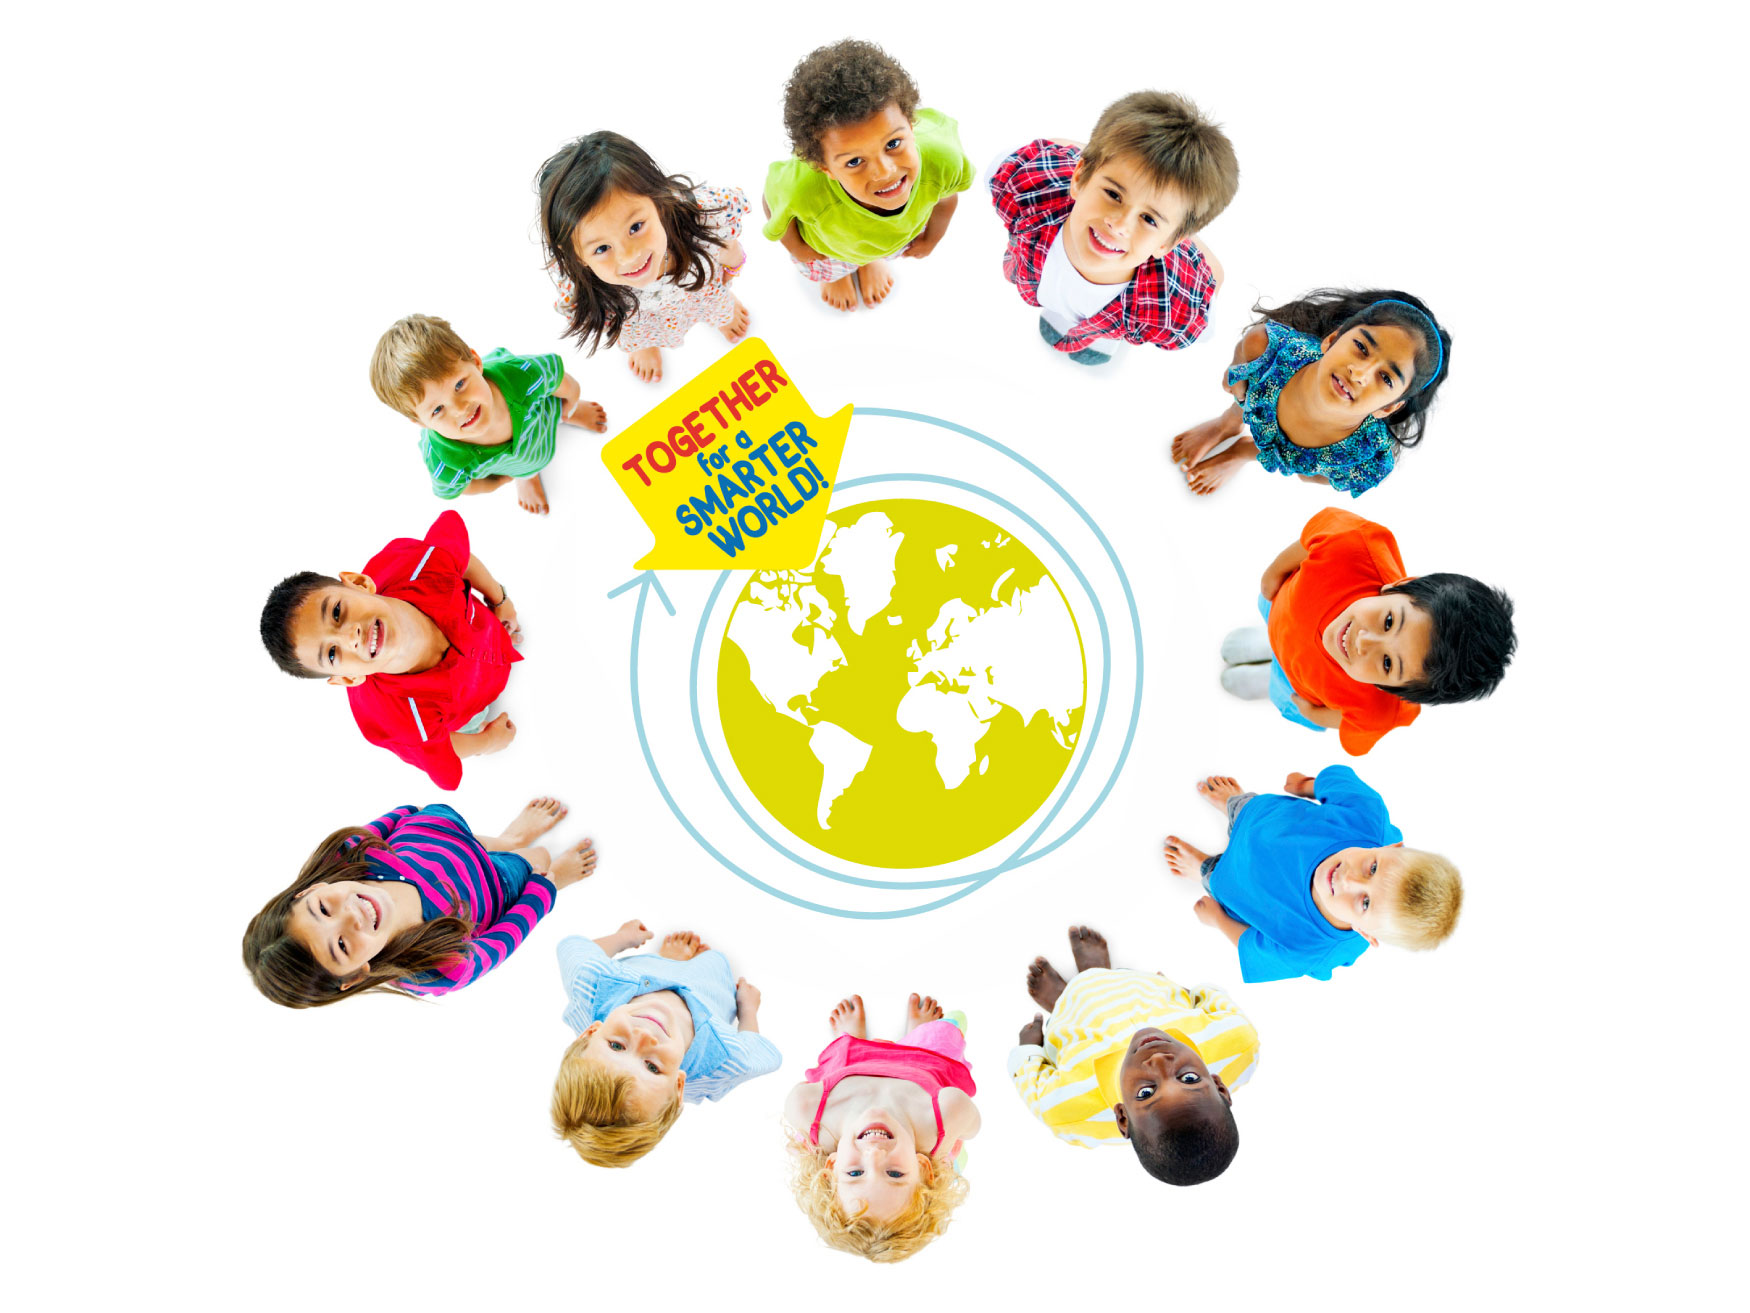 Gemeinsam können wir mehr erreichen für die ausbildung der Kinder auf der Welt! Werden Sie jetzt Mitglied von schoolinmypocket.org